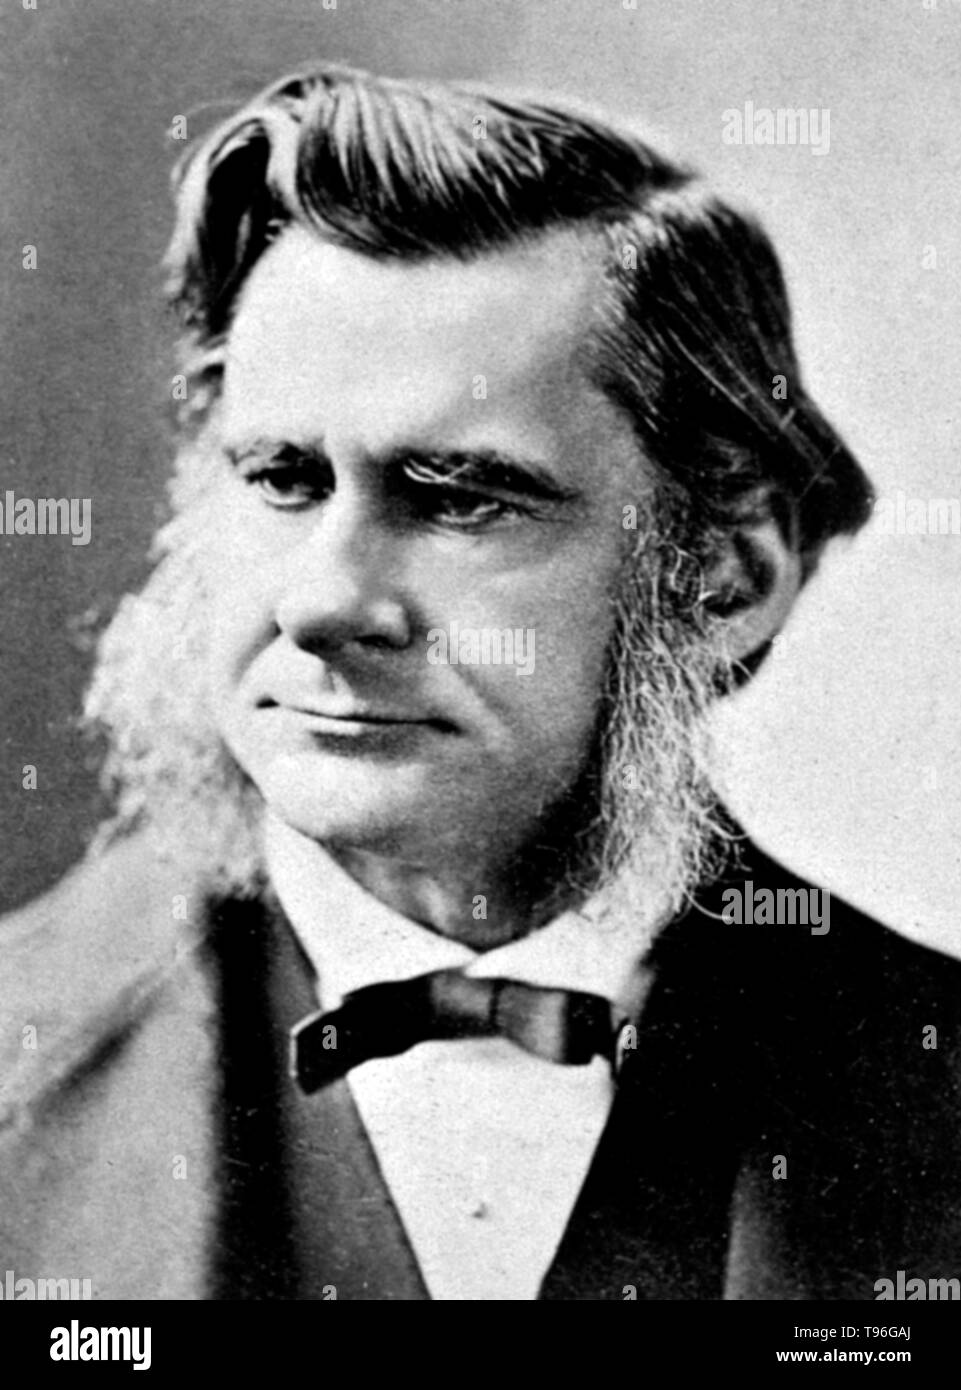 Thomas Henry Huxley (4 mai 1825 - 29 juin 1895) était un biologiste anglais, connu sous le nom de 'Darwin's' pour sa défense de Charles la théorie de l'évolution de Darwin. Huxley's célèbre 1860 Débat avec Samuel Wilberforce a été un moment clé de l'acceptation plus large de l'évolution, et dans sa propre carrière. Huxley a été lente à accepter certaines idées de Darwin, tels que l'étapisme, et était indécis quant à la sélection naturelle, mais malgré cela, il était dans son entier soutien public de Darwin. Banque D'Images